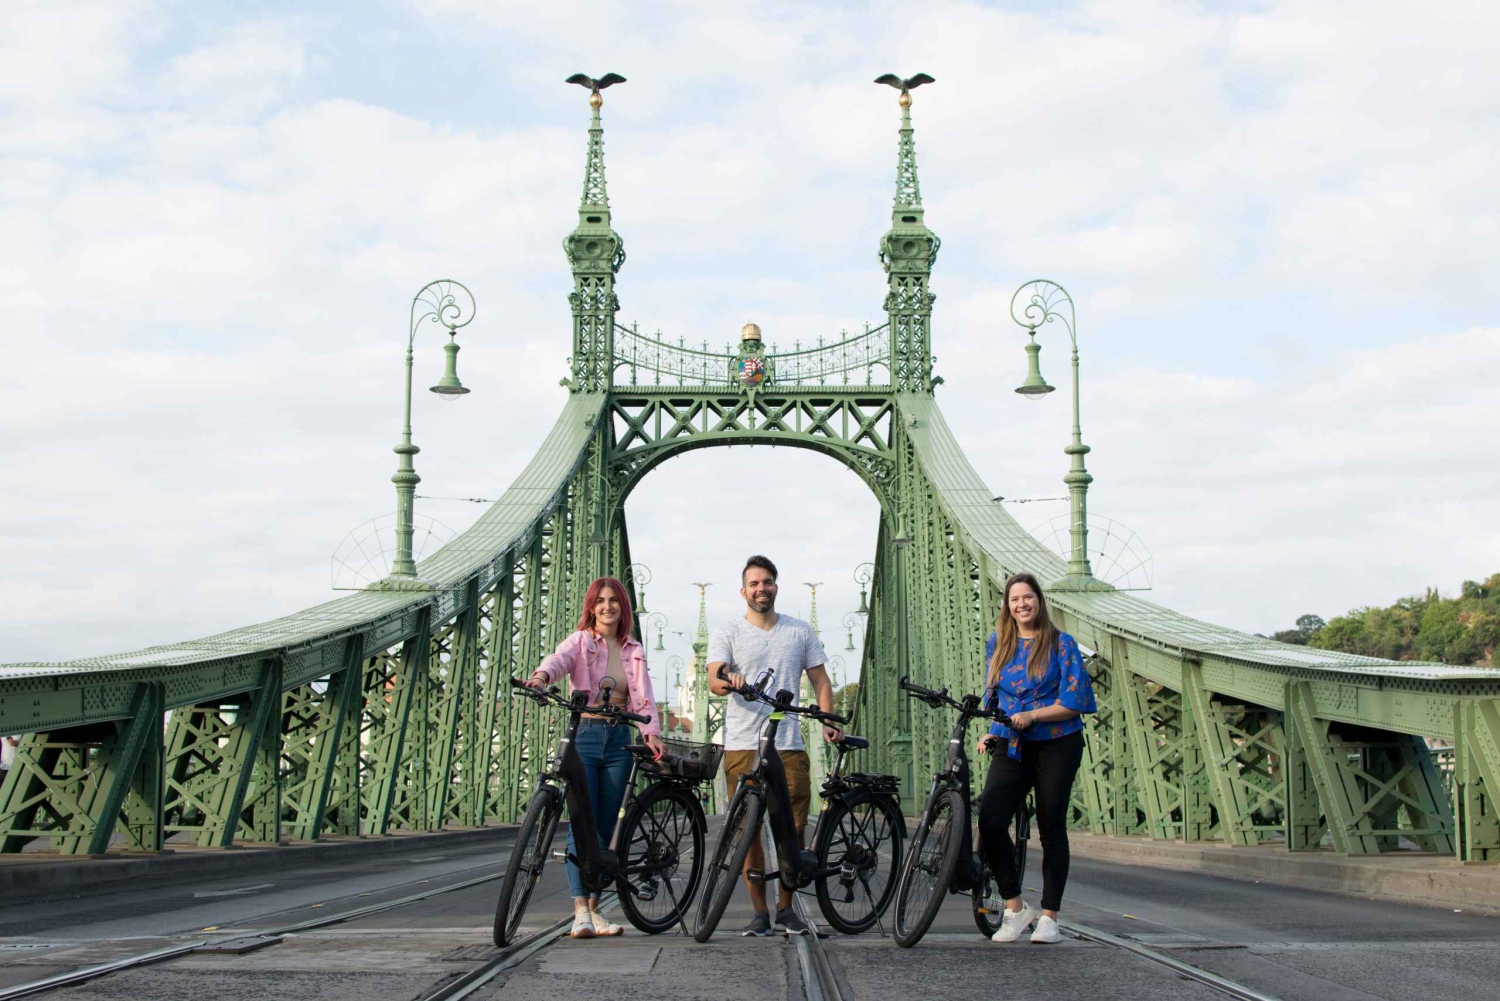 E-Bike & Budapest: 3-Hour E-Bike Adventure of Buda & Pest!